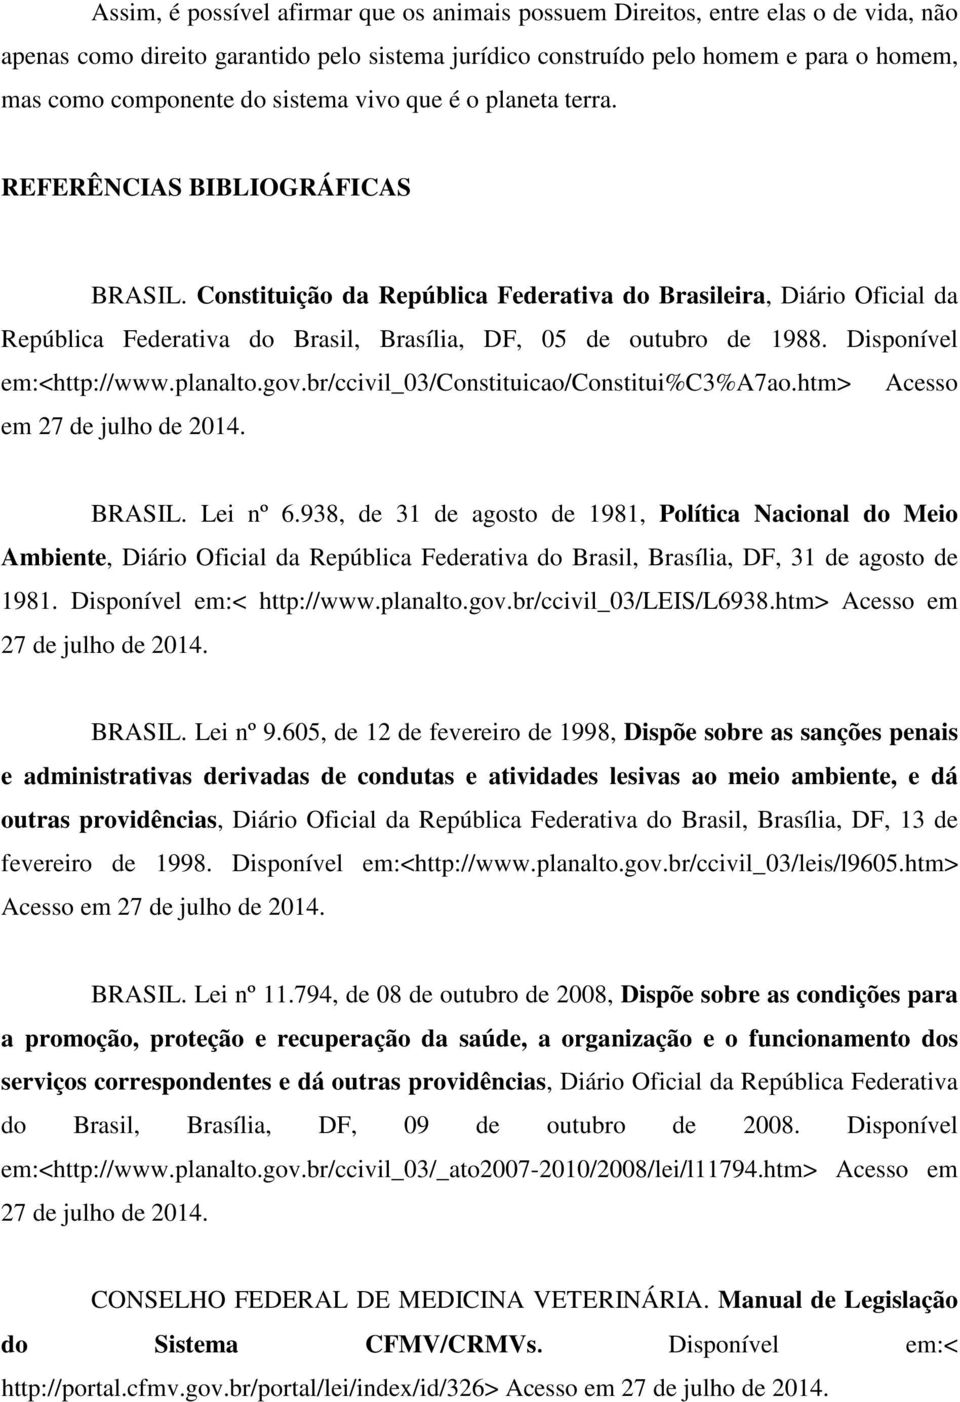 Constituição da República Federativa do Brasileira, Diário Oficial da República Federativa do Brasil, Brasília, DF, 05 de outubro de 1988. Disponível em:<http://www.planalto.gov.